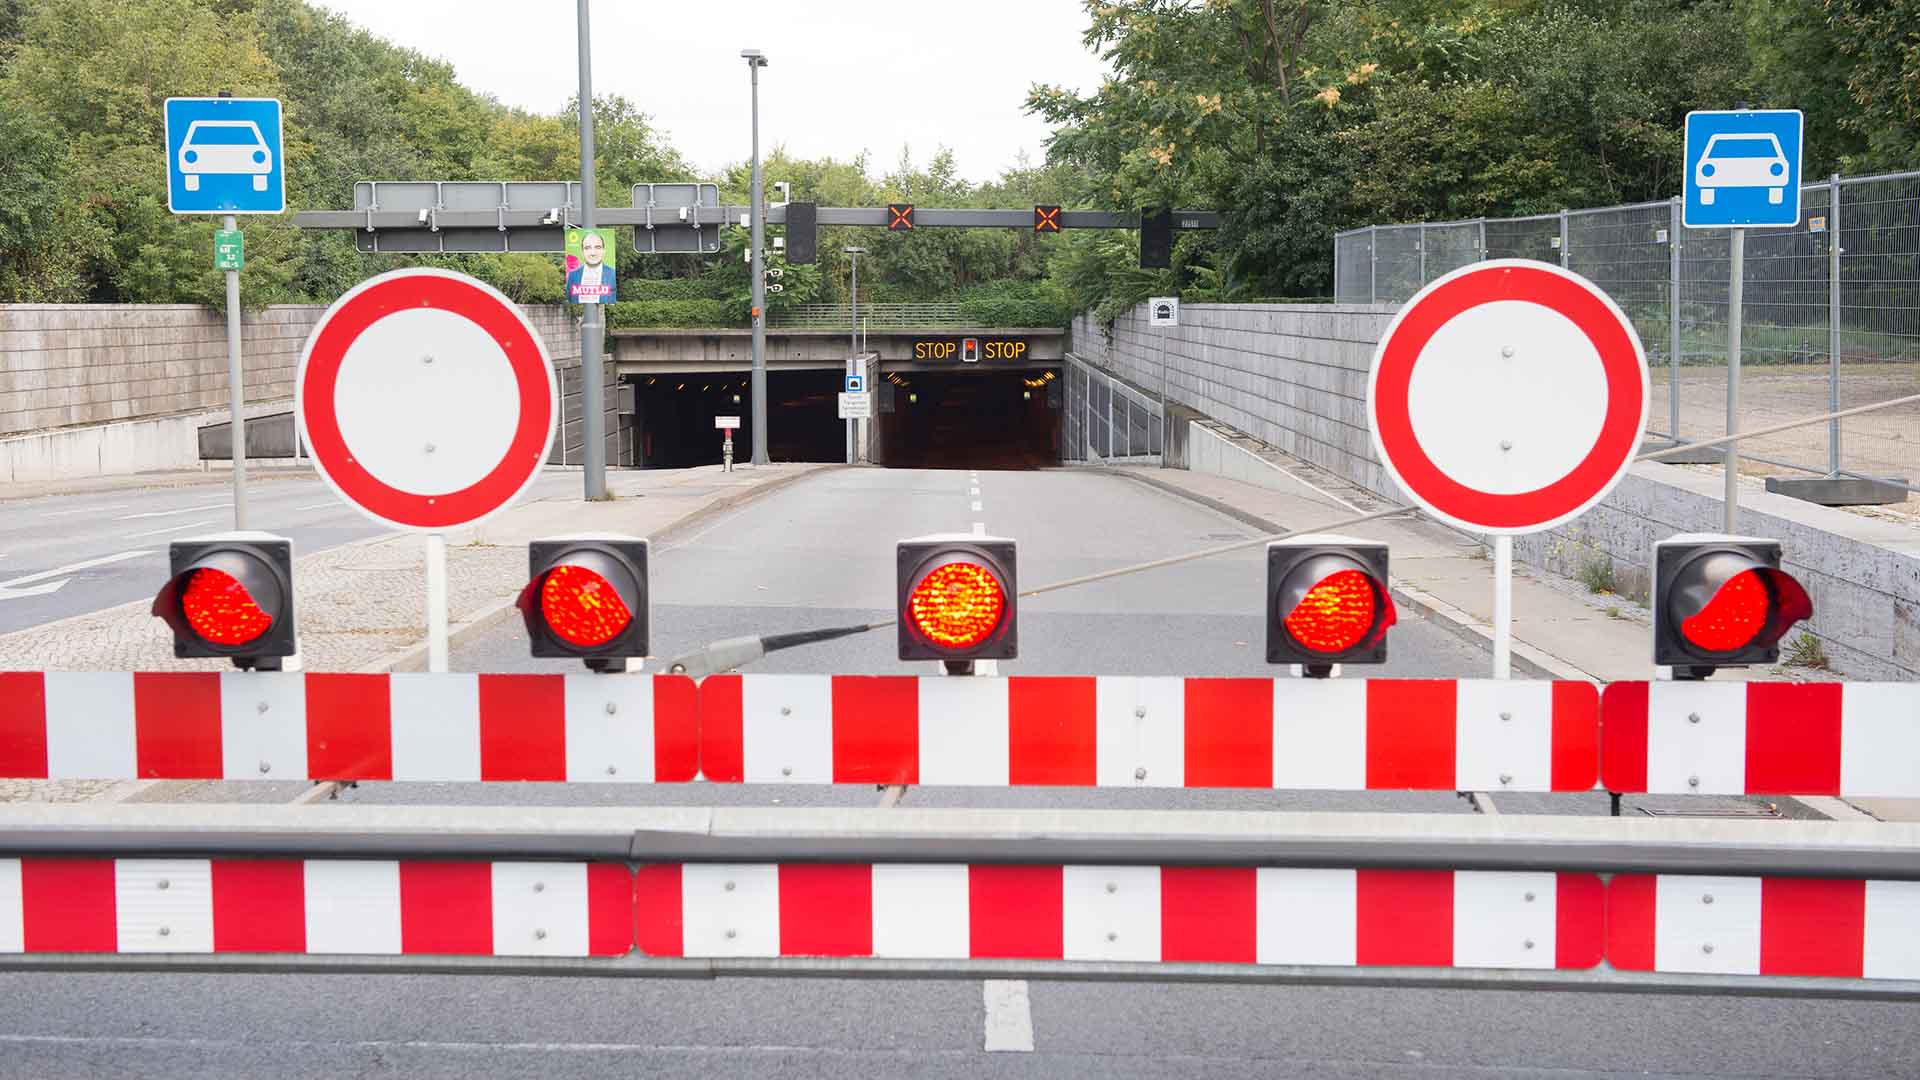 Archivbild: "Stop" steht in Berlin auf den Tafeln über der Zufahrt zum Tiergartentunnel. (Quelle: dpa/Zinken)